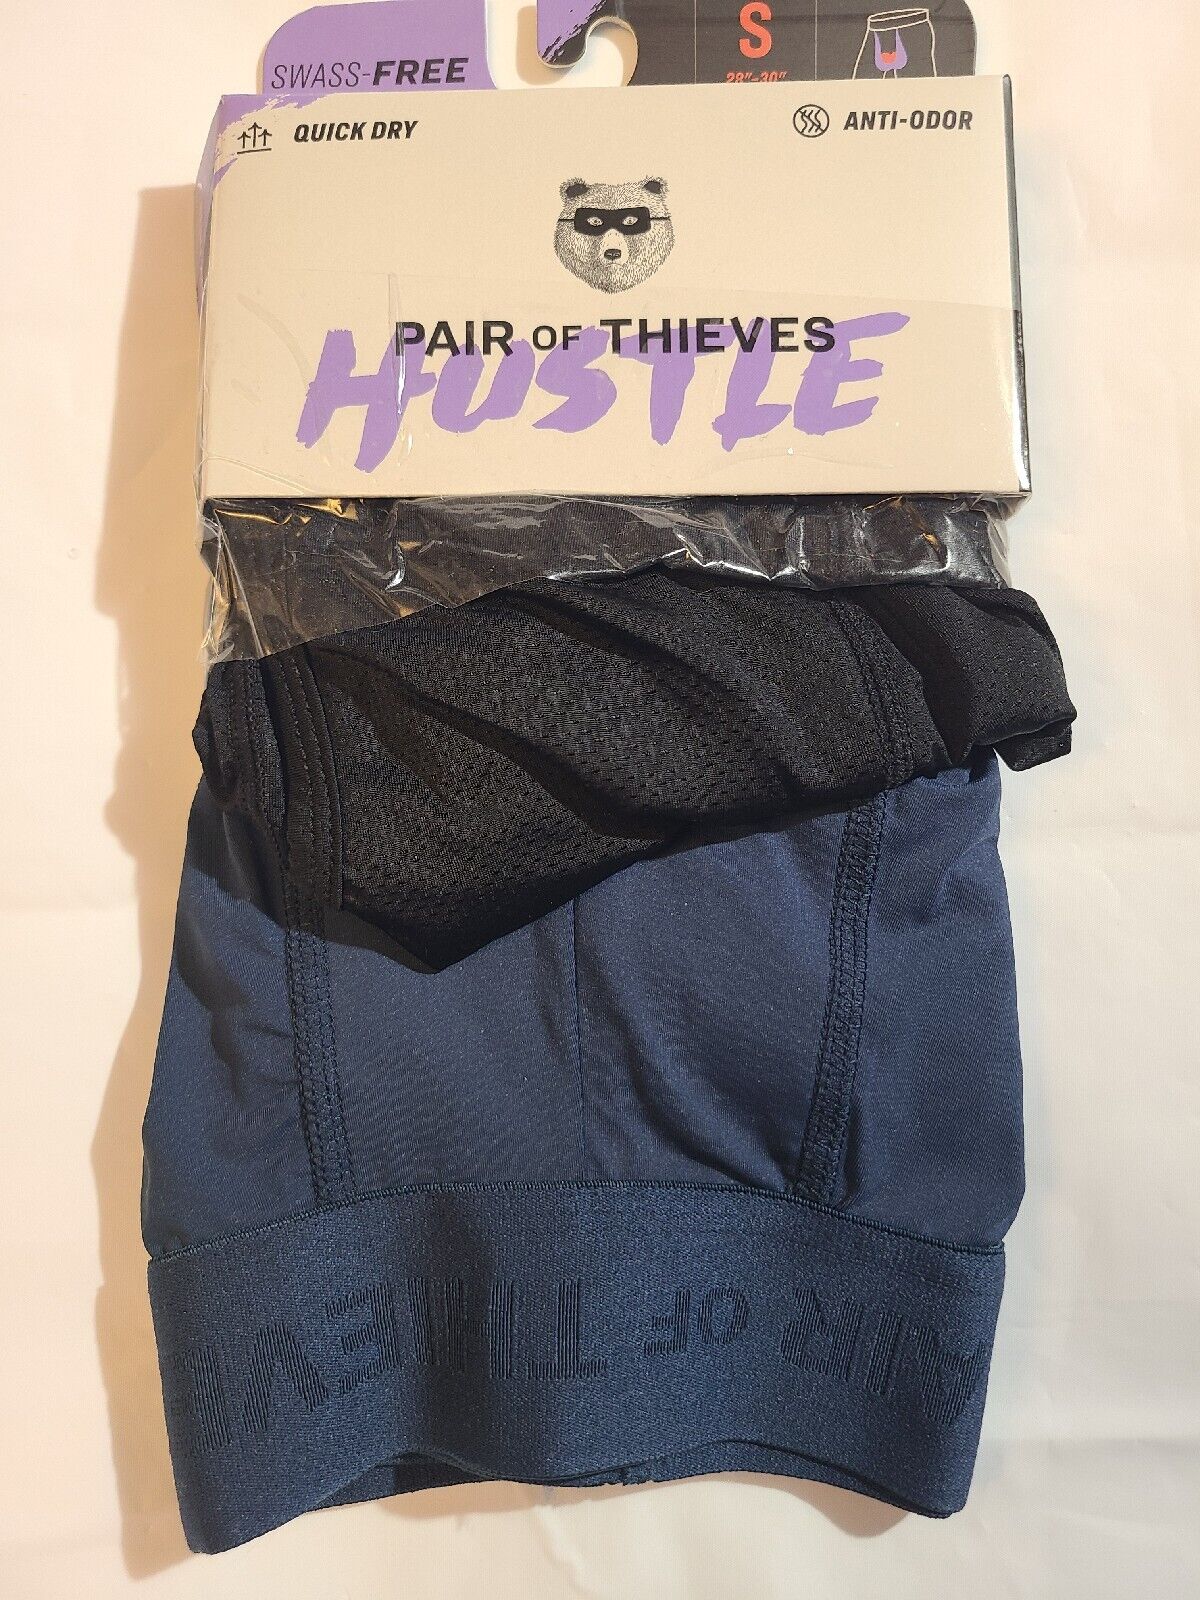 Pair of Thieves Men's Hustle Boxer Briefs 2pk- Black/Blue